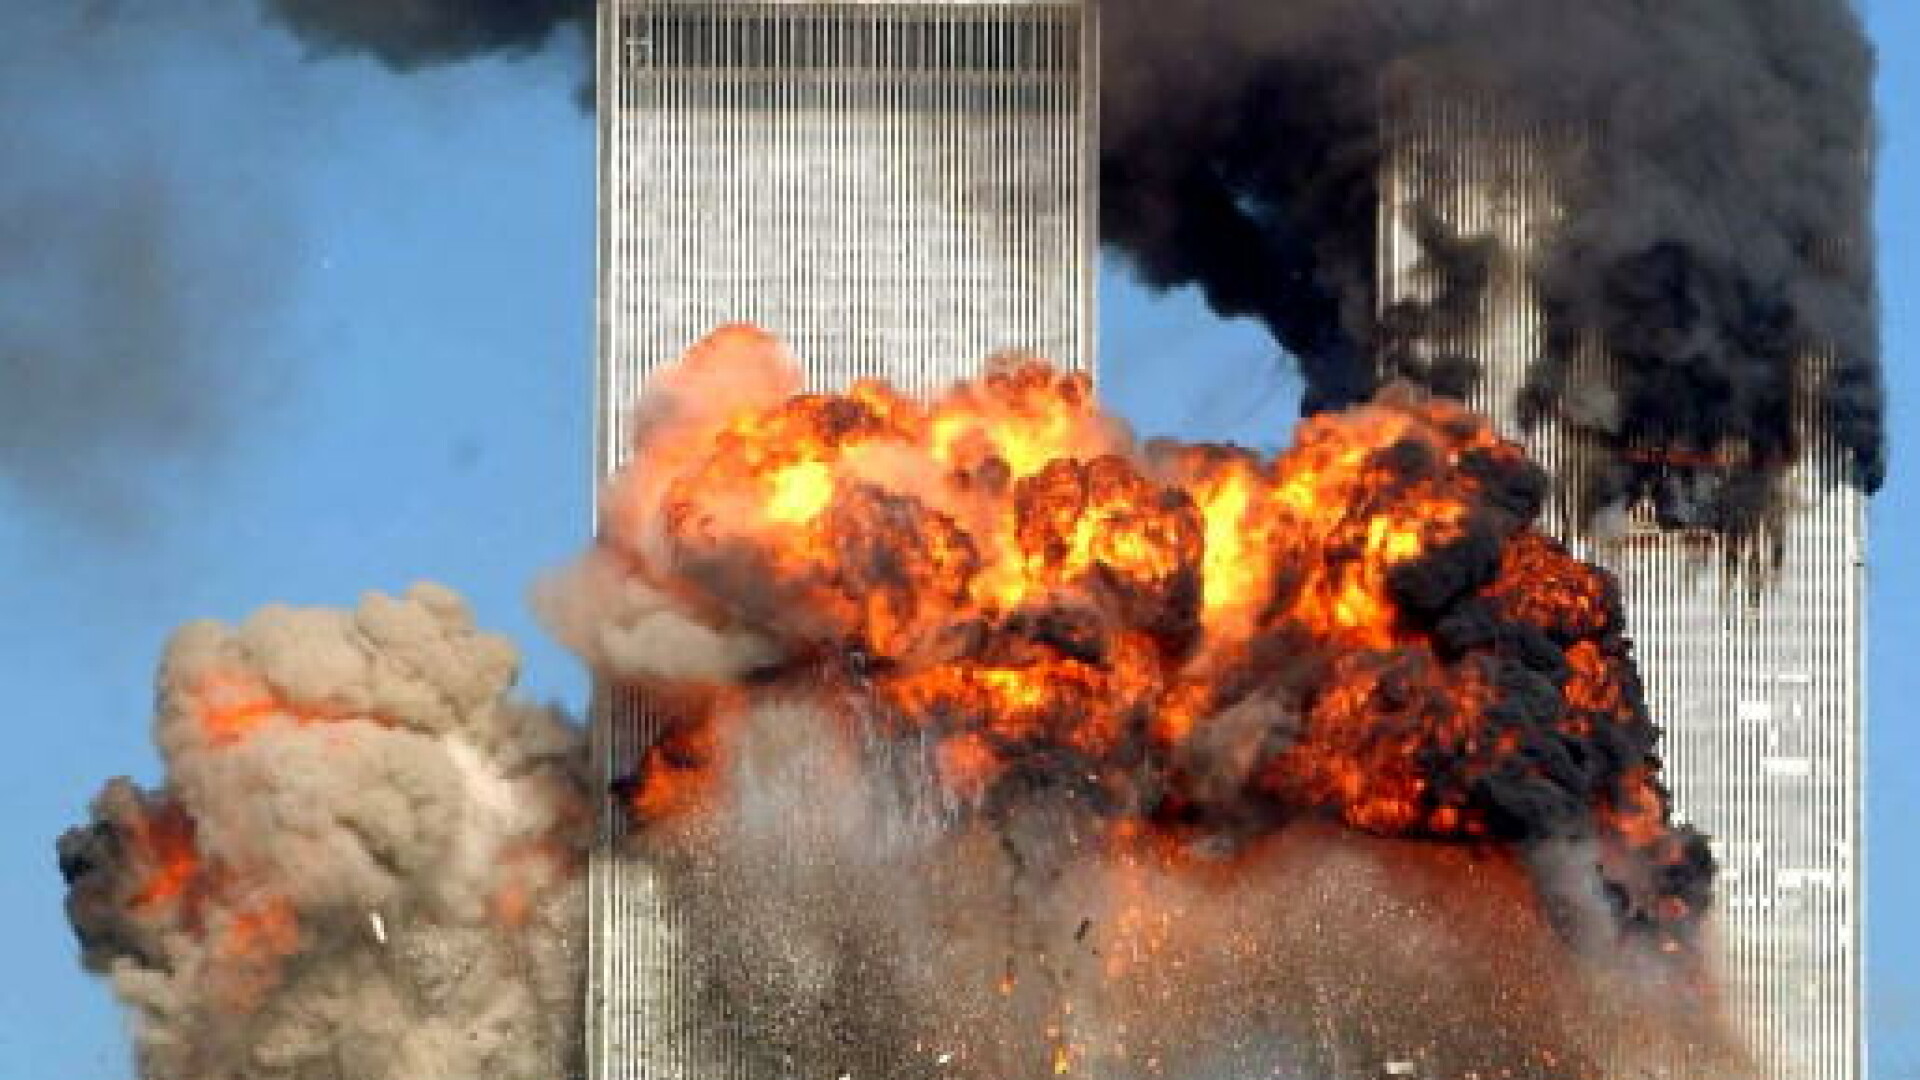 atacuri teroriste din 11 septembrie 2001